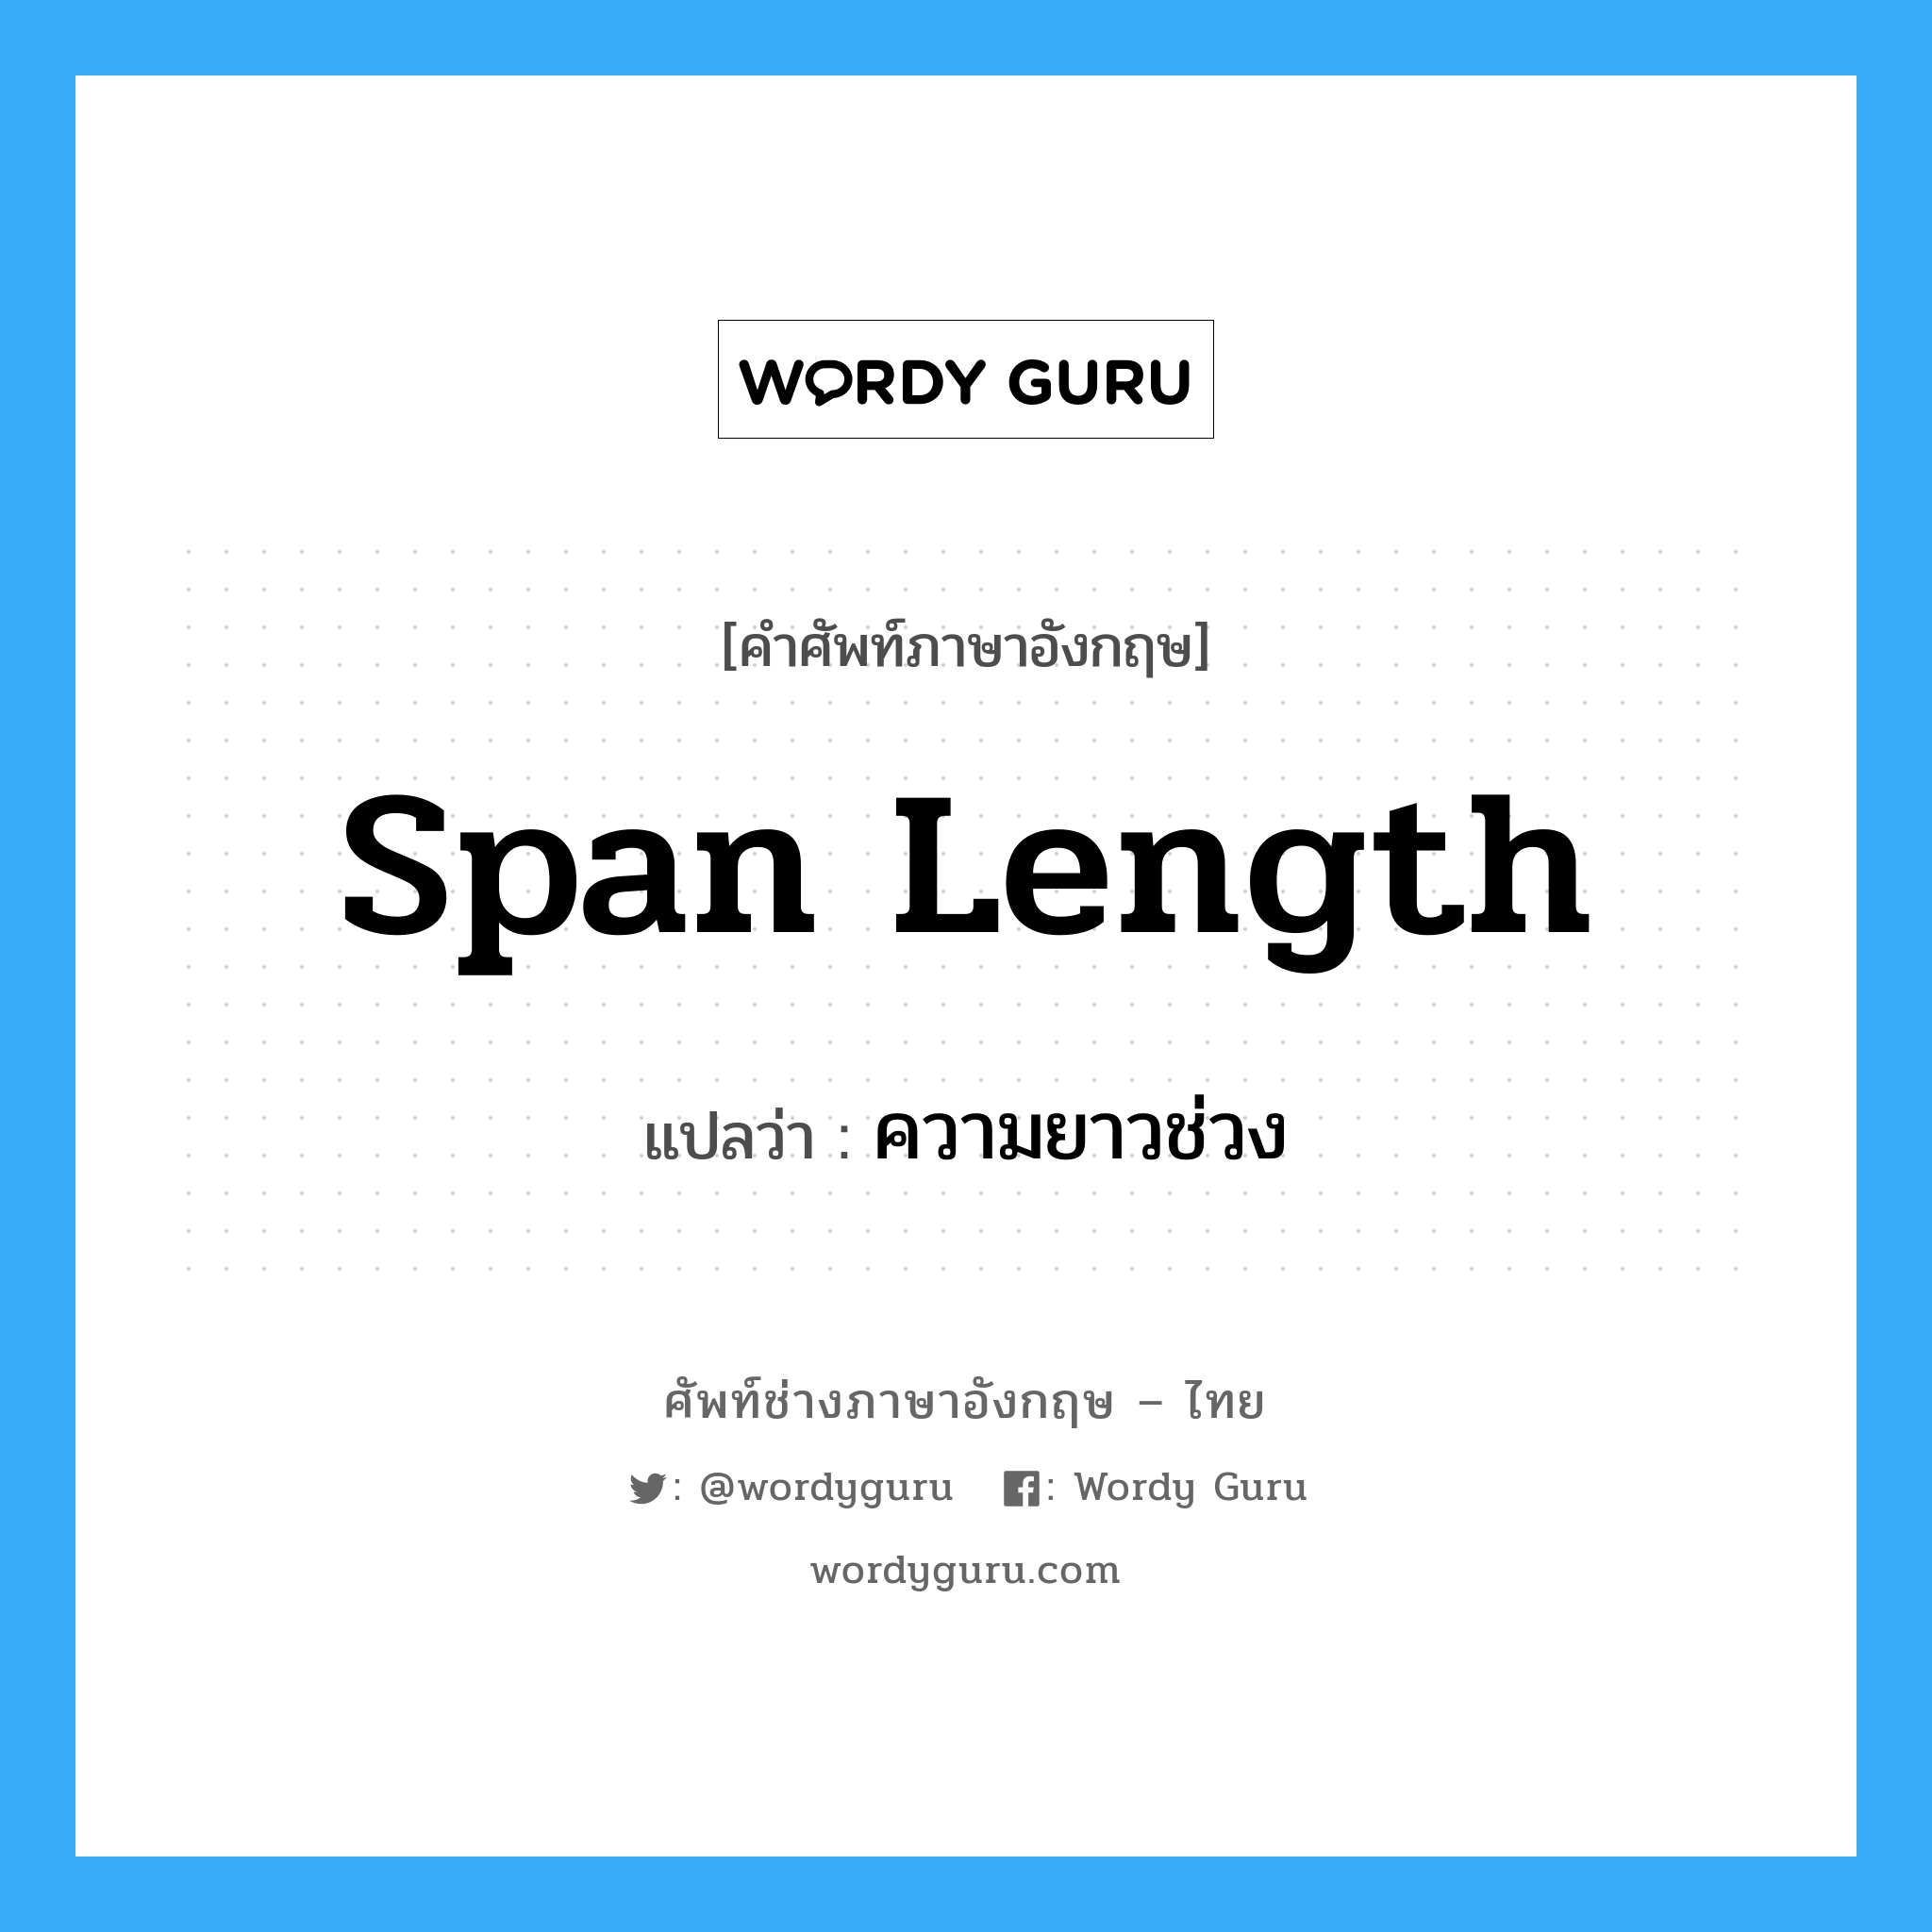 span length แปลว่า?, คำศัพท์ช่างภาษาอังกฤษ - ไทย span length คำศัพท์ภาษาอังกฤษ span length แปลว่า ความยาวช่วง